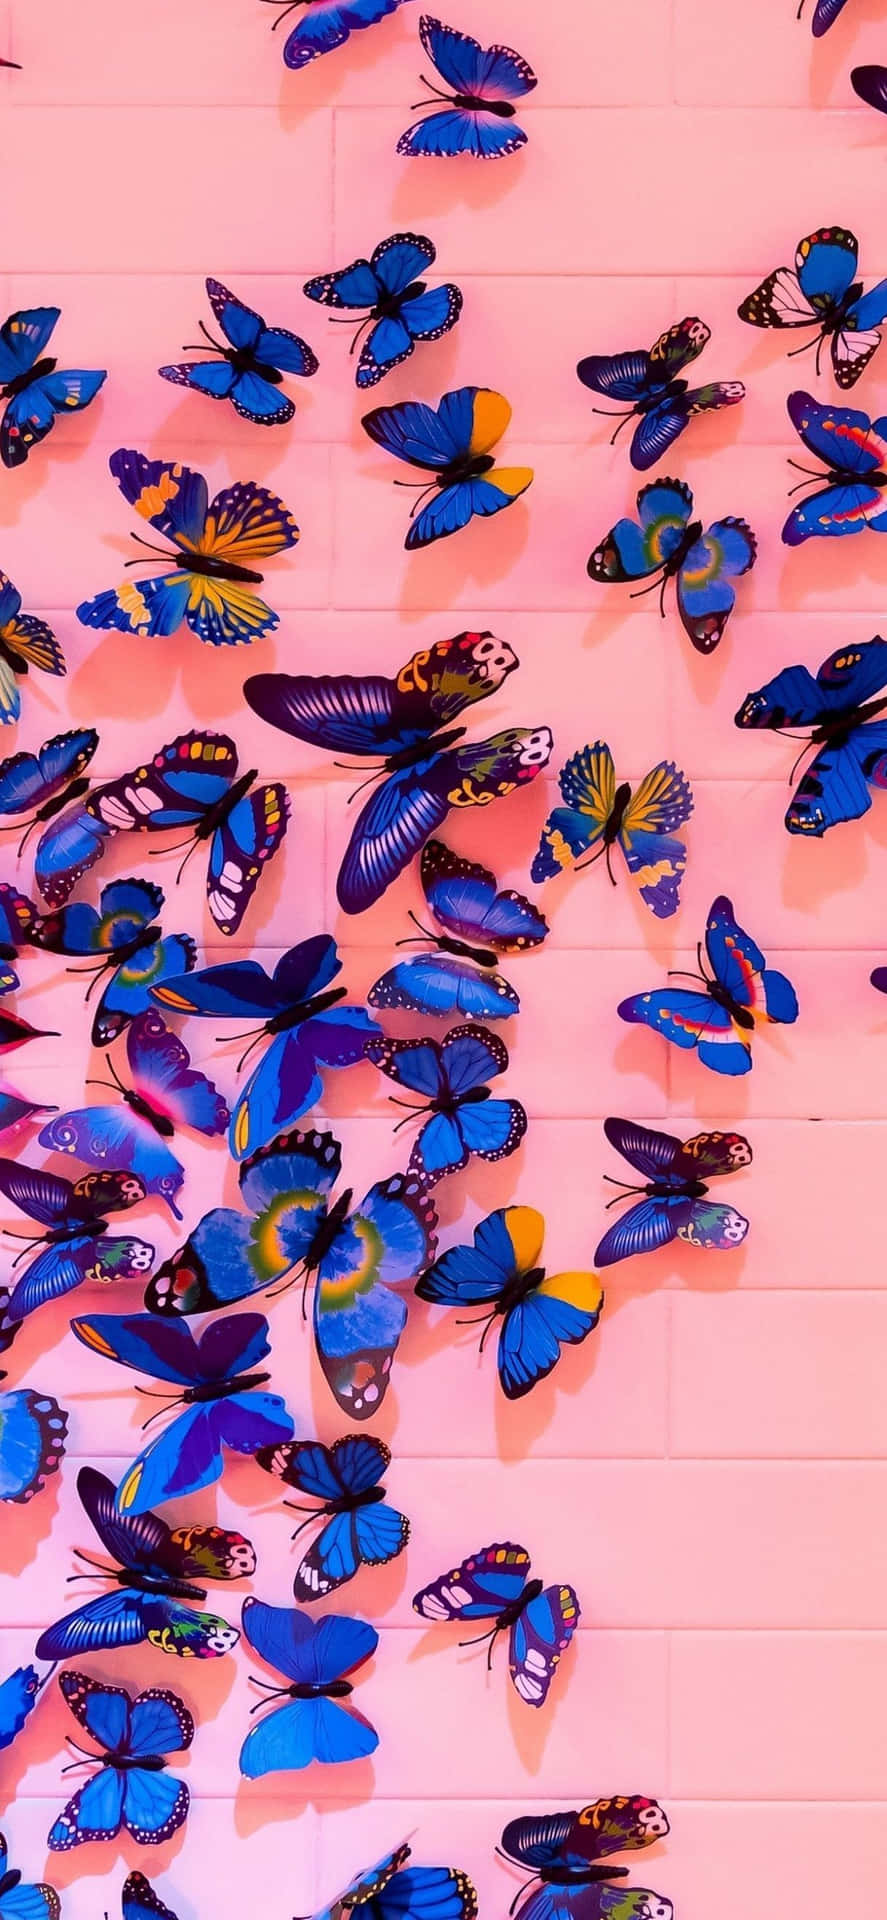 A Wall Of Butterflies On A Pink Wall Wallpaper